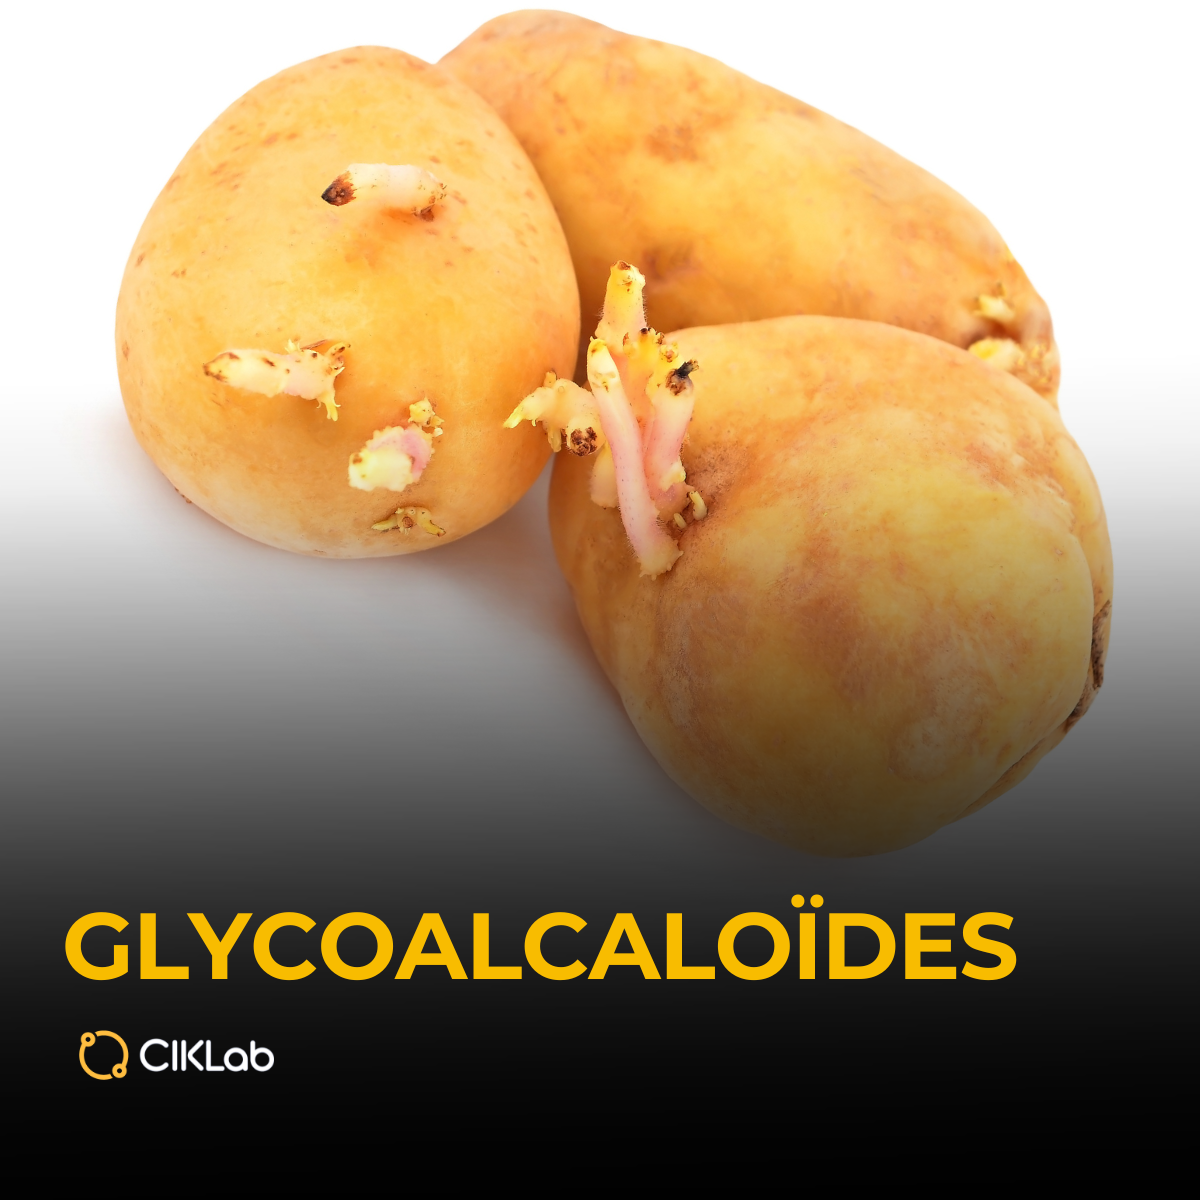 les glycoalcaloïdes dans les aliments